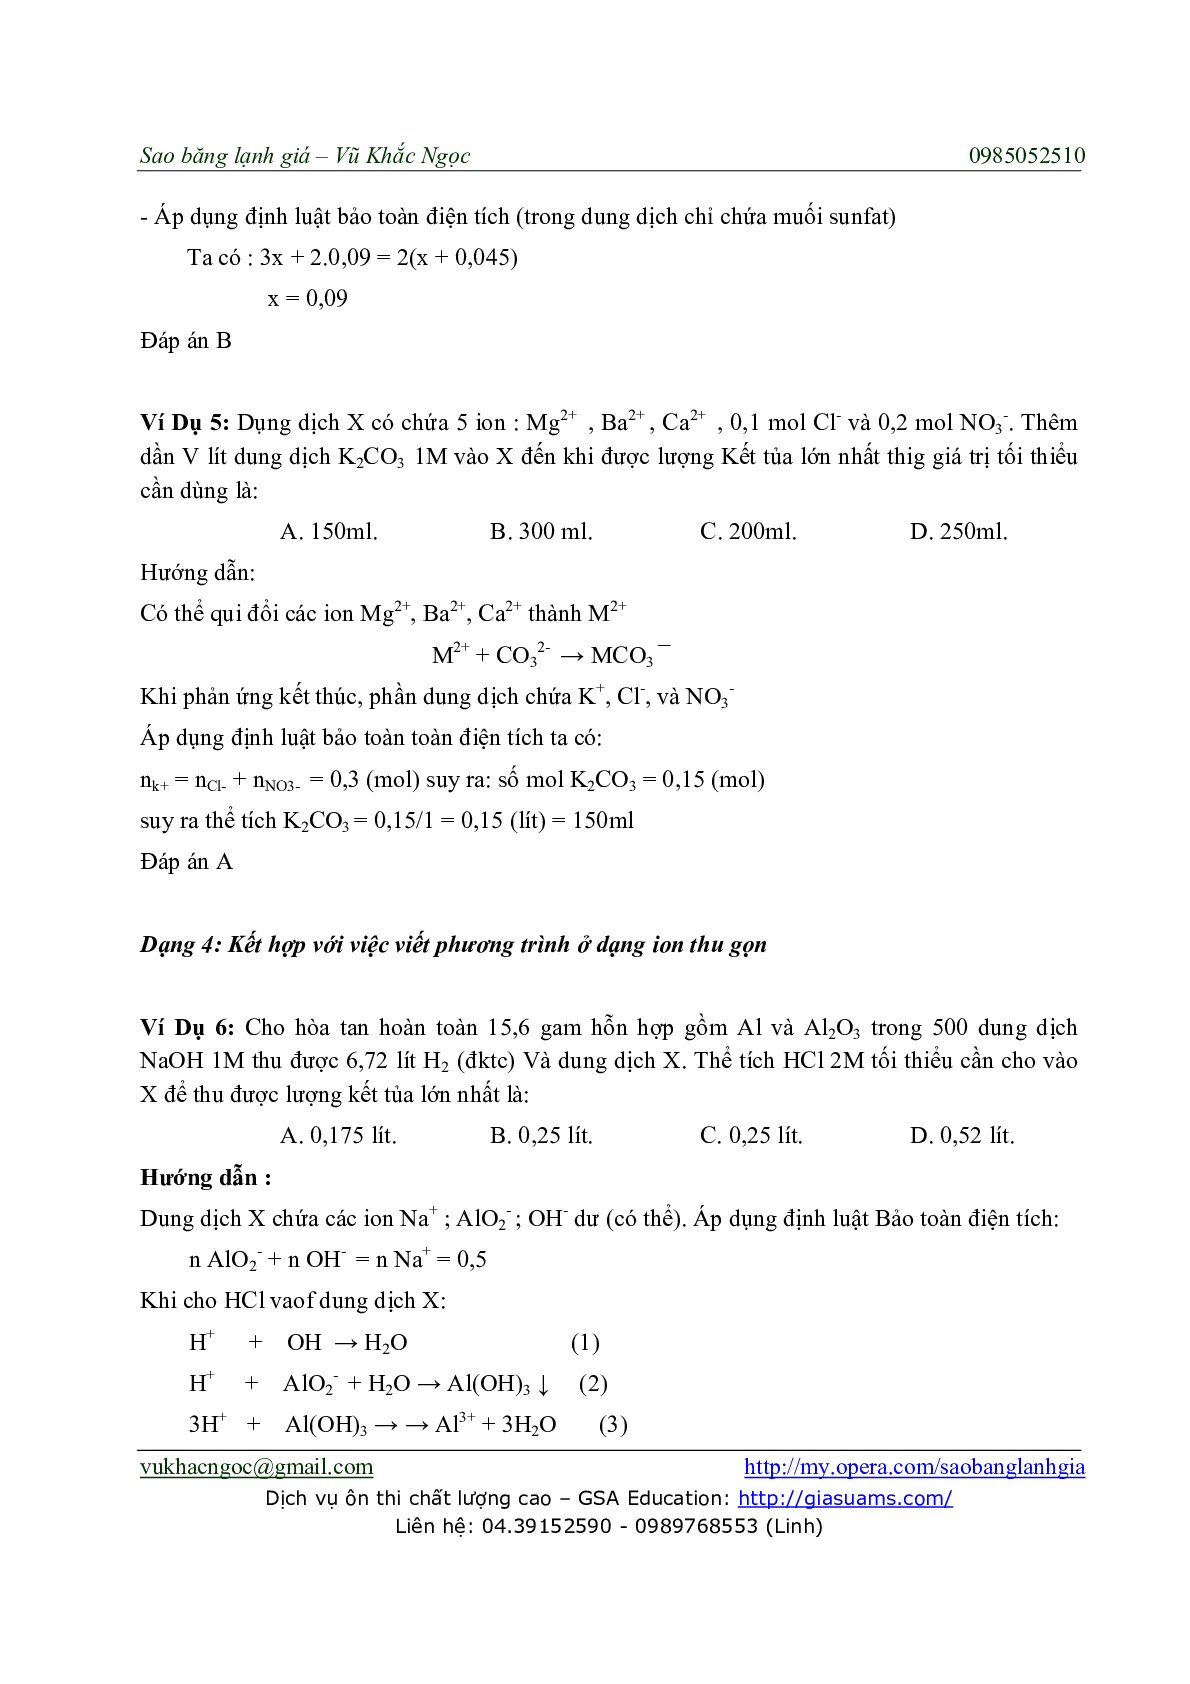 Chuyên đề Phương pháp Bảo toàn điện tích môn Hóa học lớp 11 (trang 3)